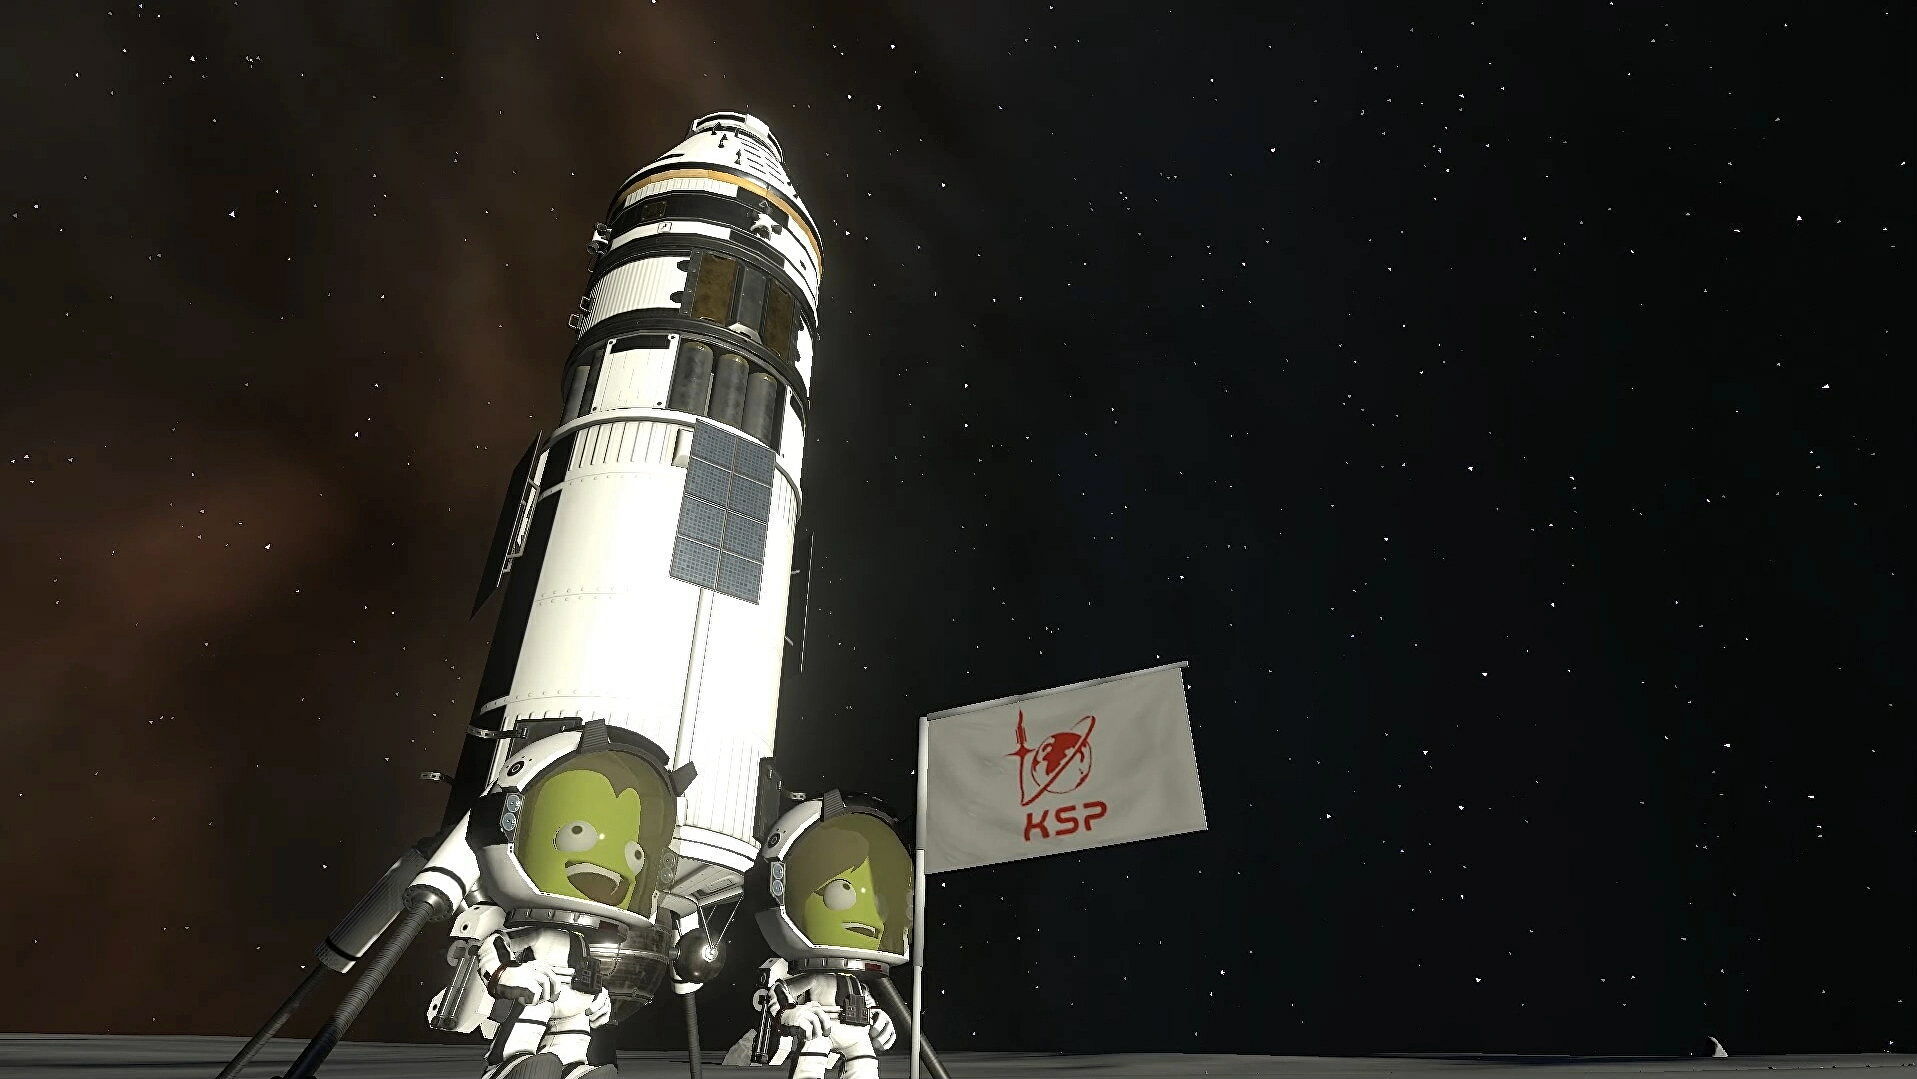 Kerbal Space Program 2’s first update arrives this week